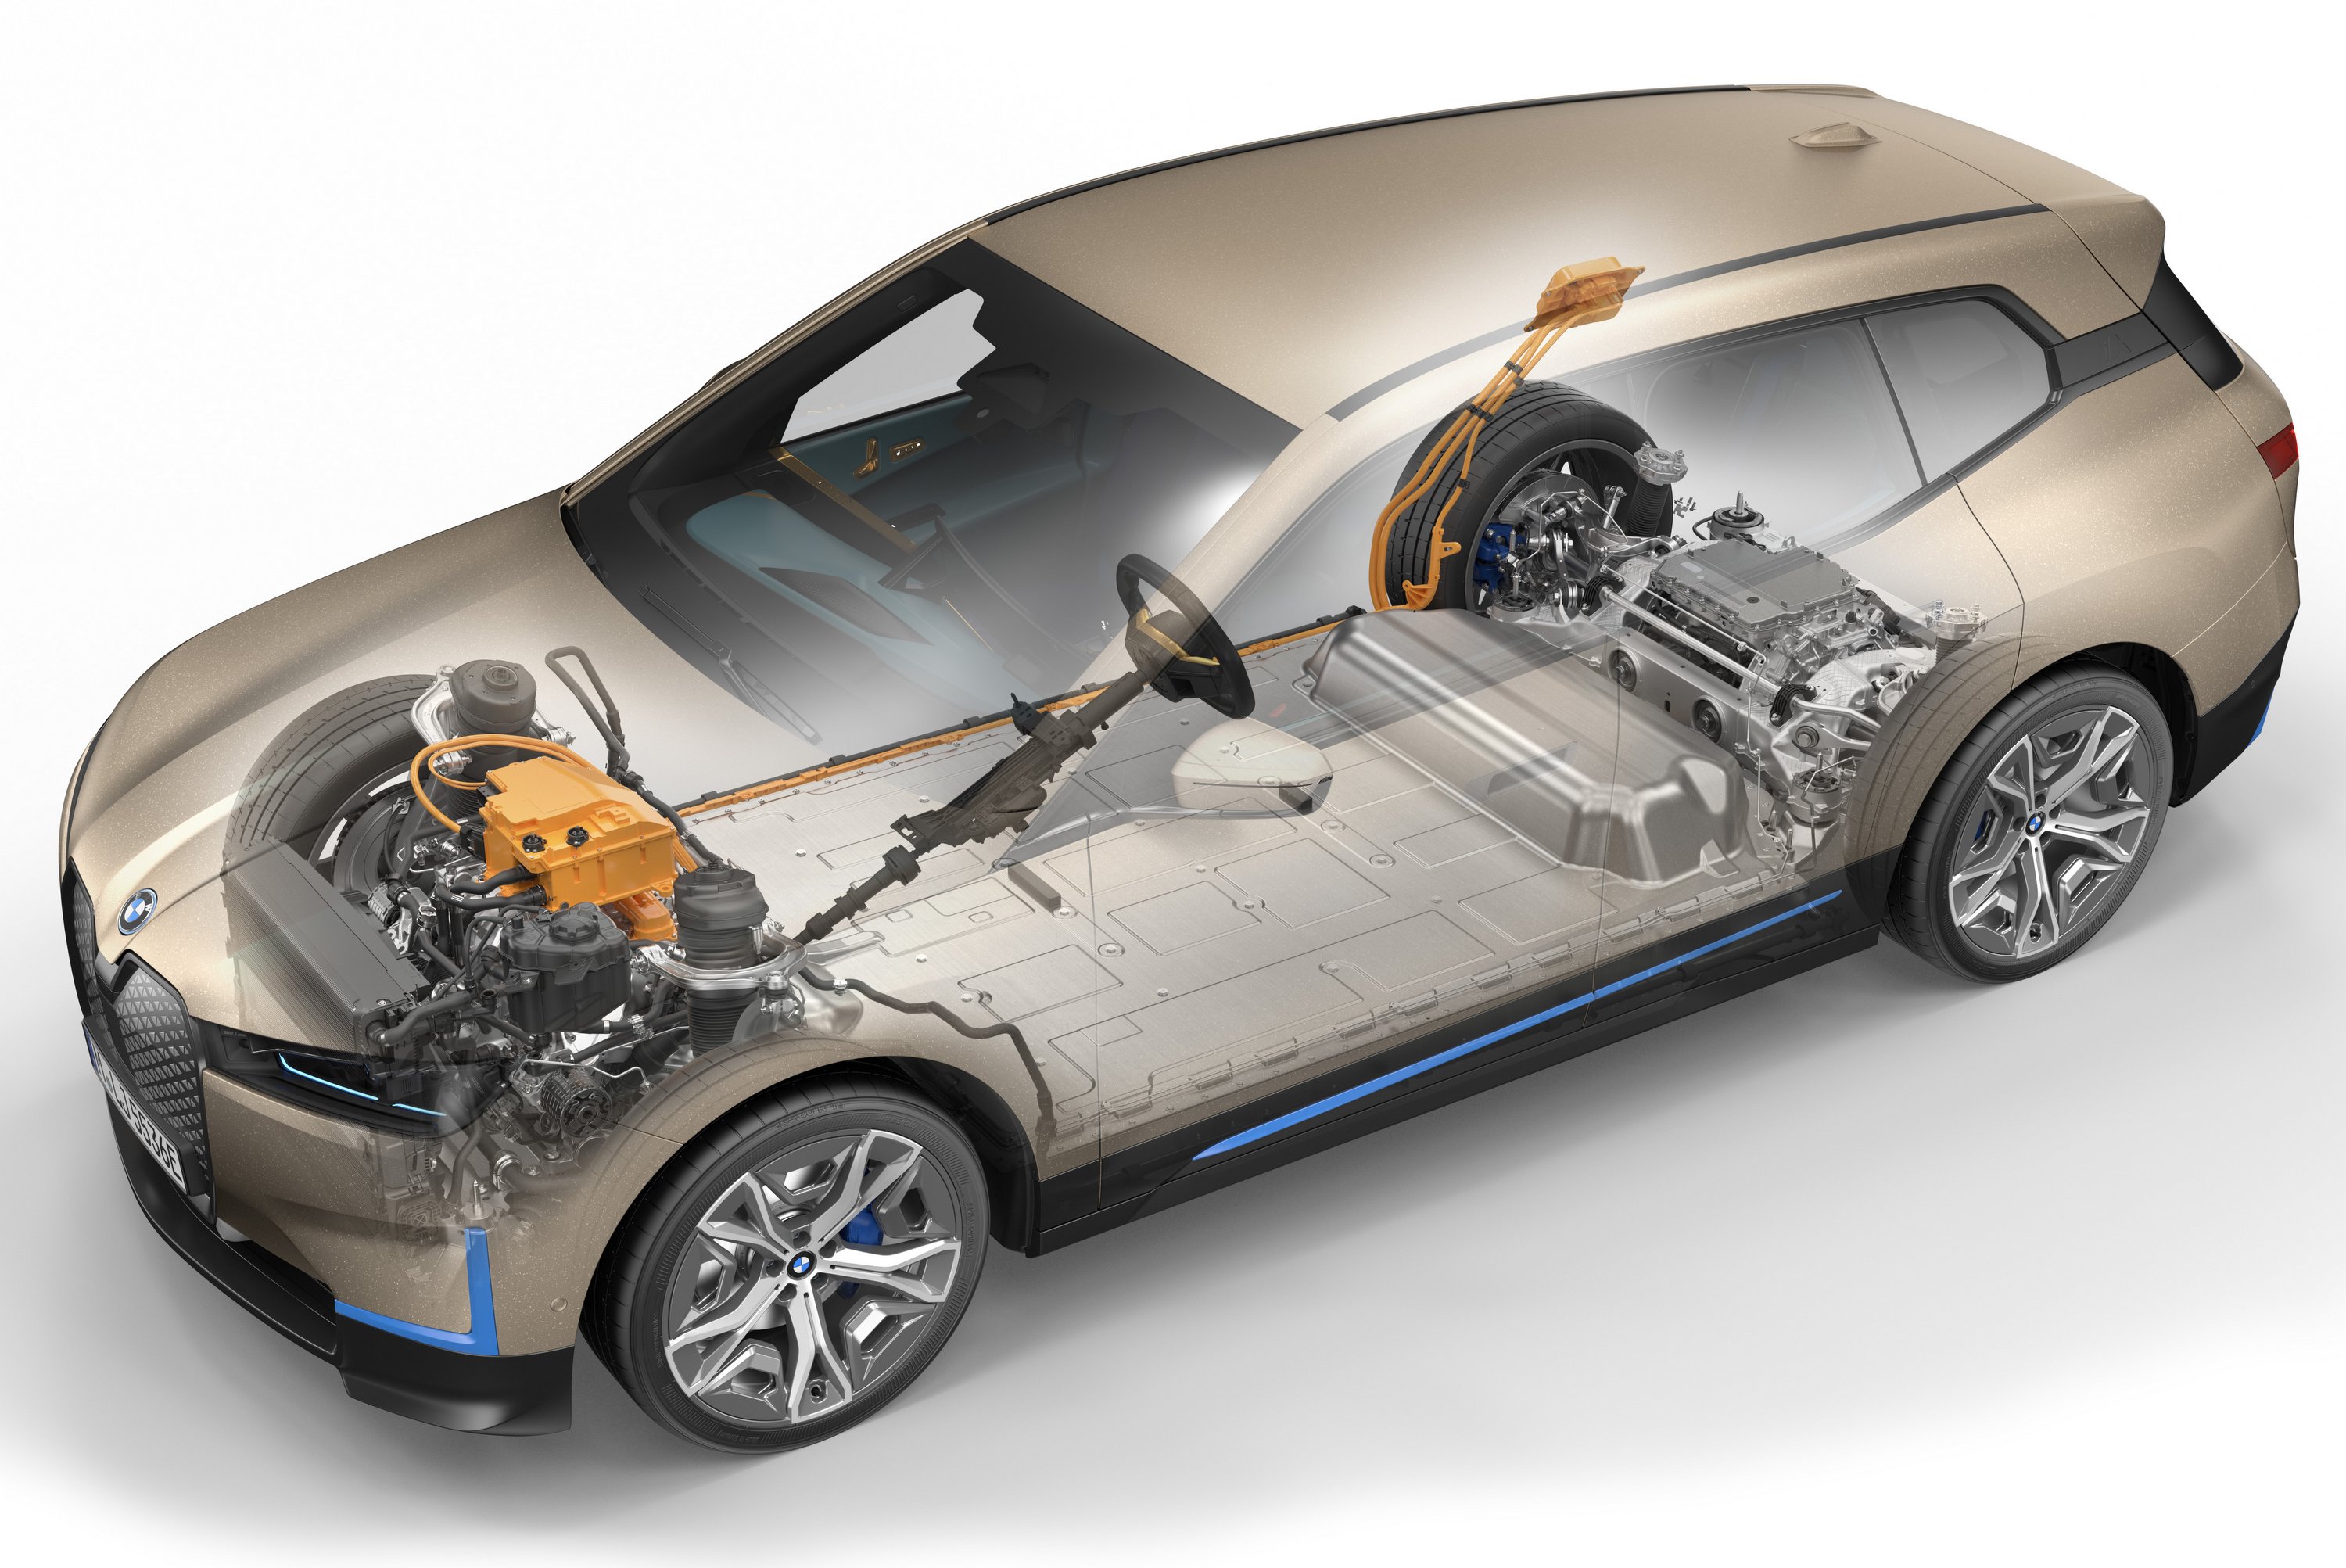 Mindent újraértelmez a BMW villany-terepjárója 9